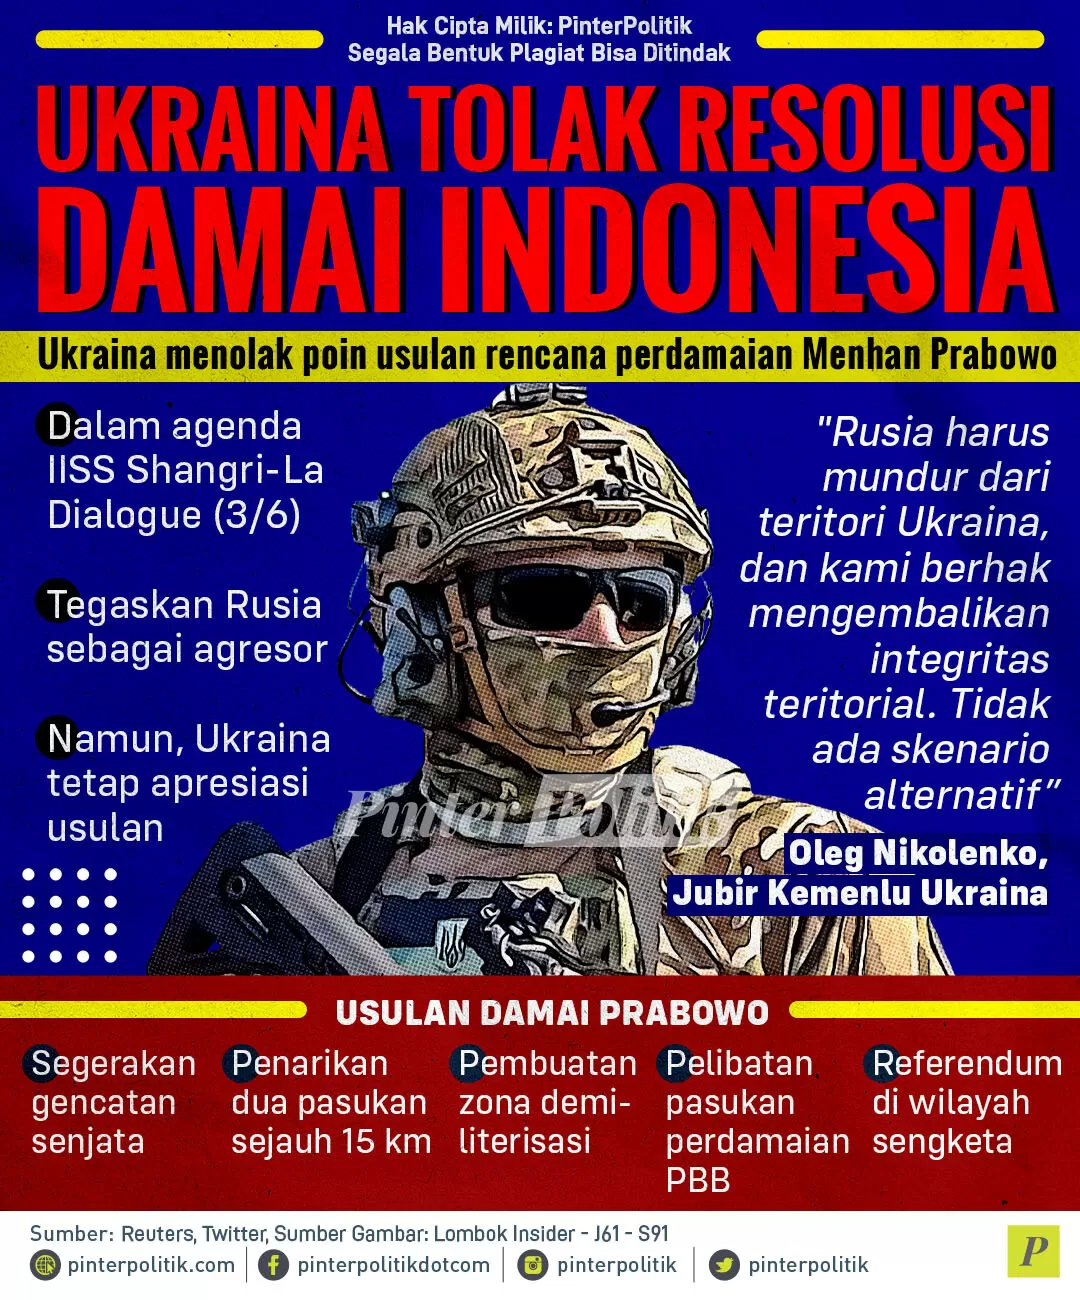 ukraina tolak resolusi damai indonesia